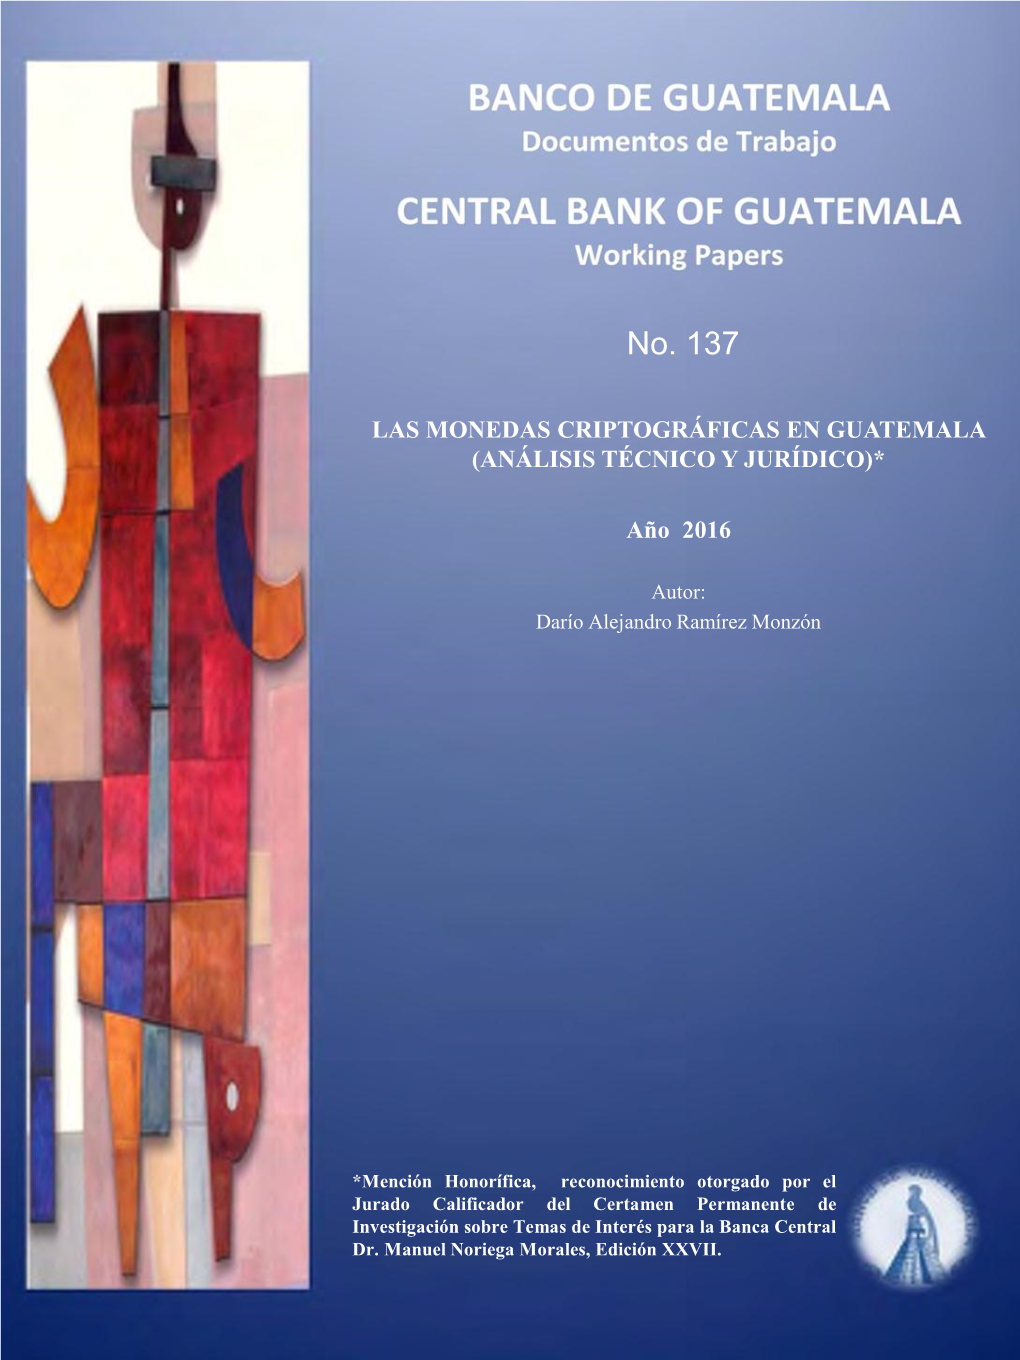 Las Monedas Criptográficas En Guatemala (Análisis Técnico Y Jurídico)*